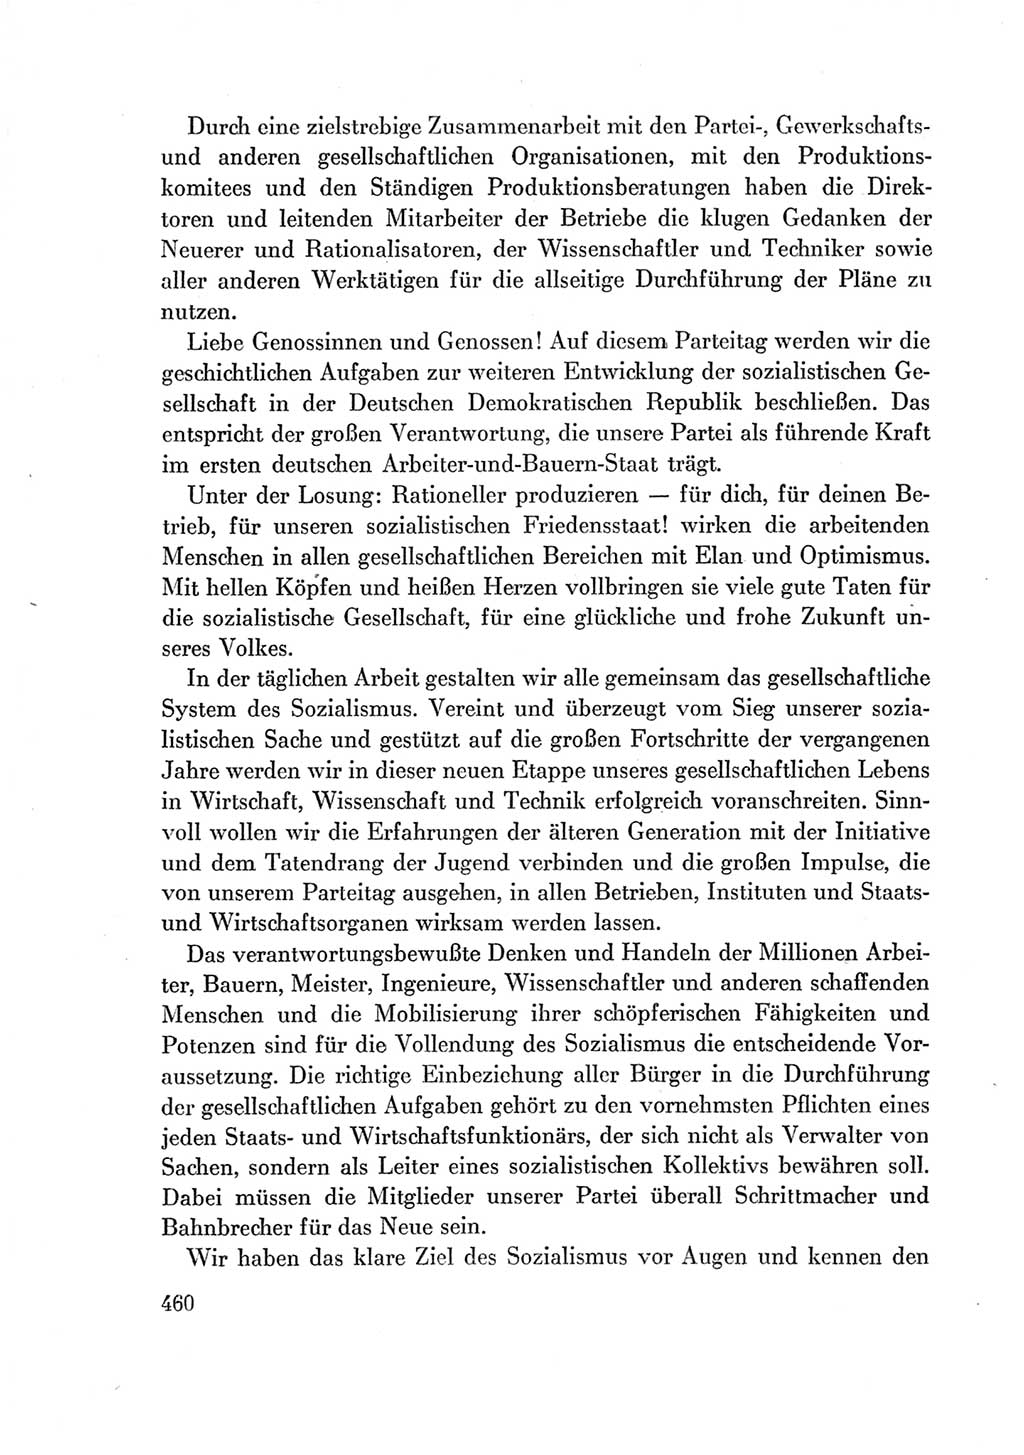 Protokoll der Verhandlungen des Ⅶ. Parteitages der Sozialistischen Einheitspartei Deutschlands (SED) [Deutsche Demokratische Republik (DDR)] 1967, Band Ⅰ, Seite 460 (Prot. Verh. Ⅶ. PT SED DDR 1967, Bd. Ⅰ, S. 460)